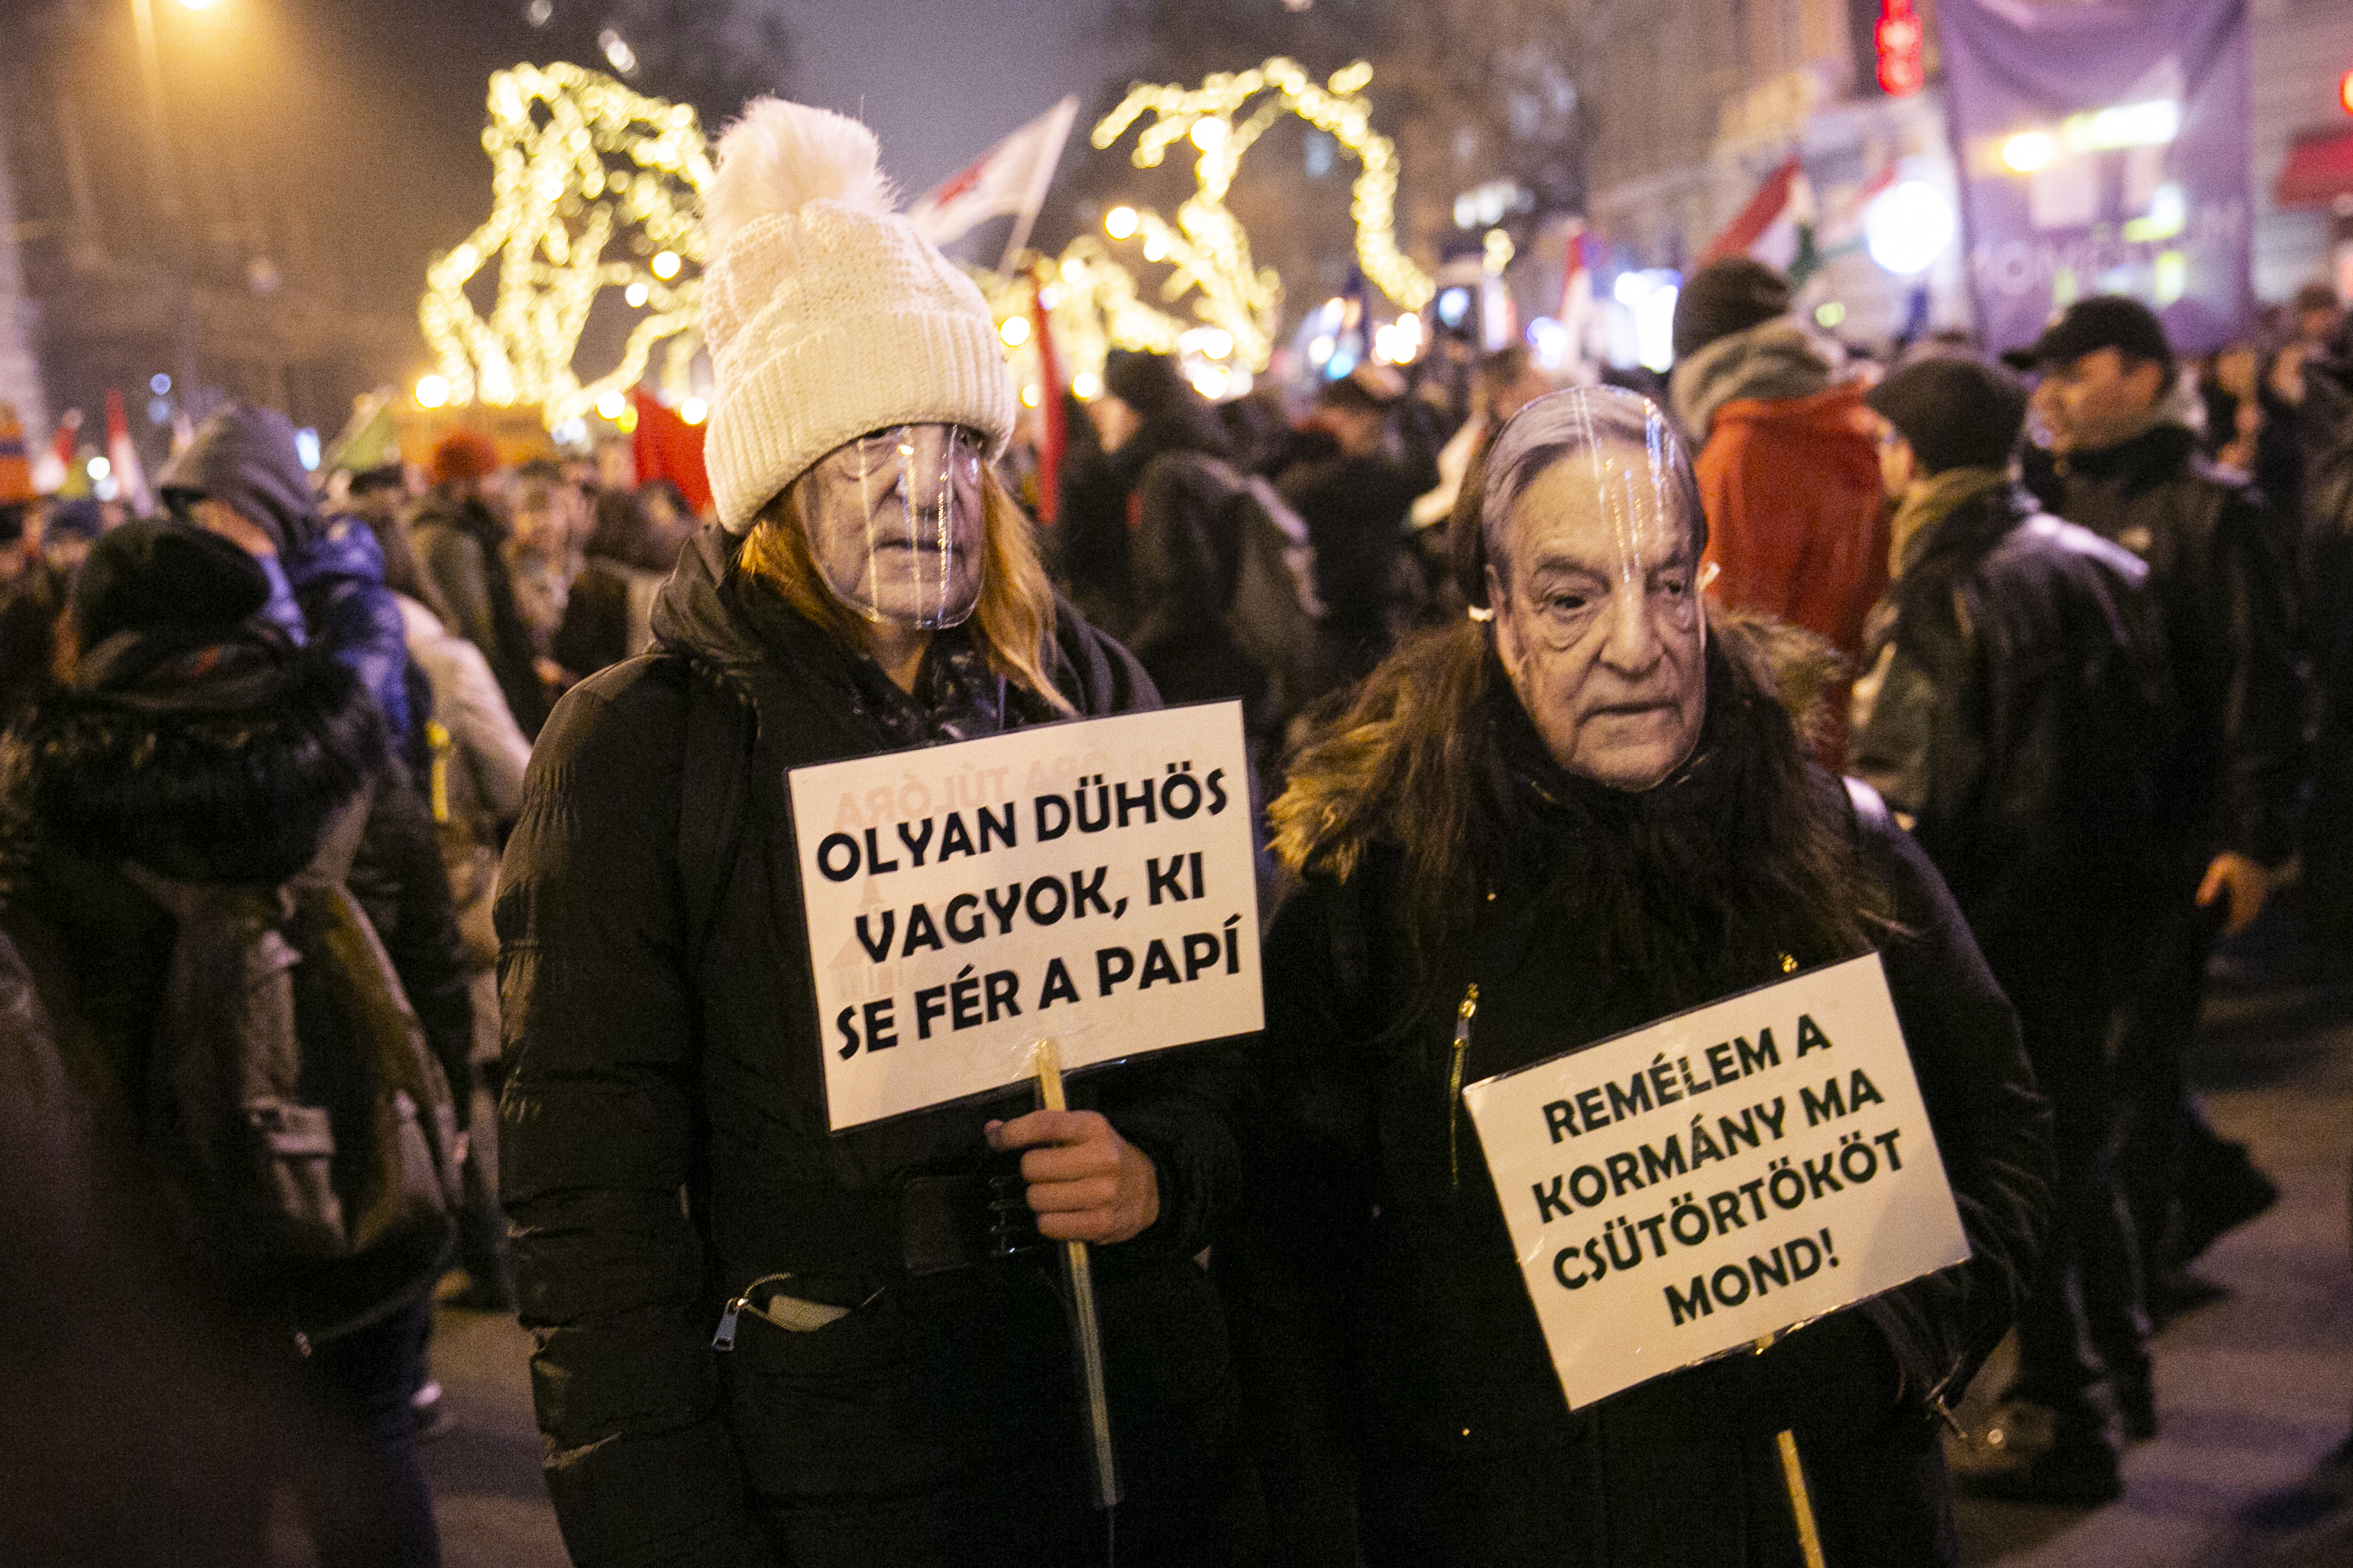 Fidesz: Bűnözői körök vesznek részt a Soros-hálózat által szervezett zavargásokban